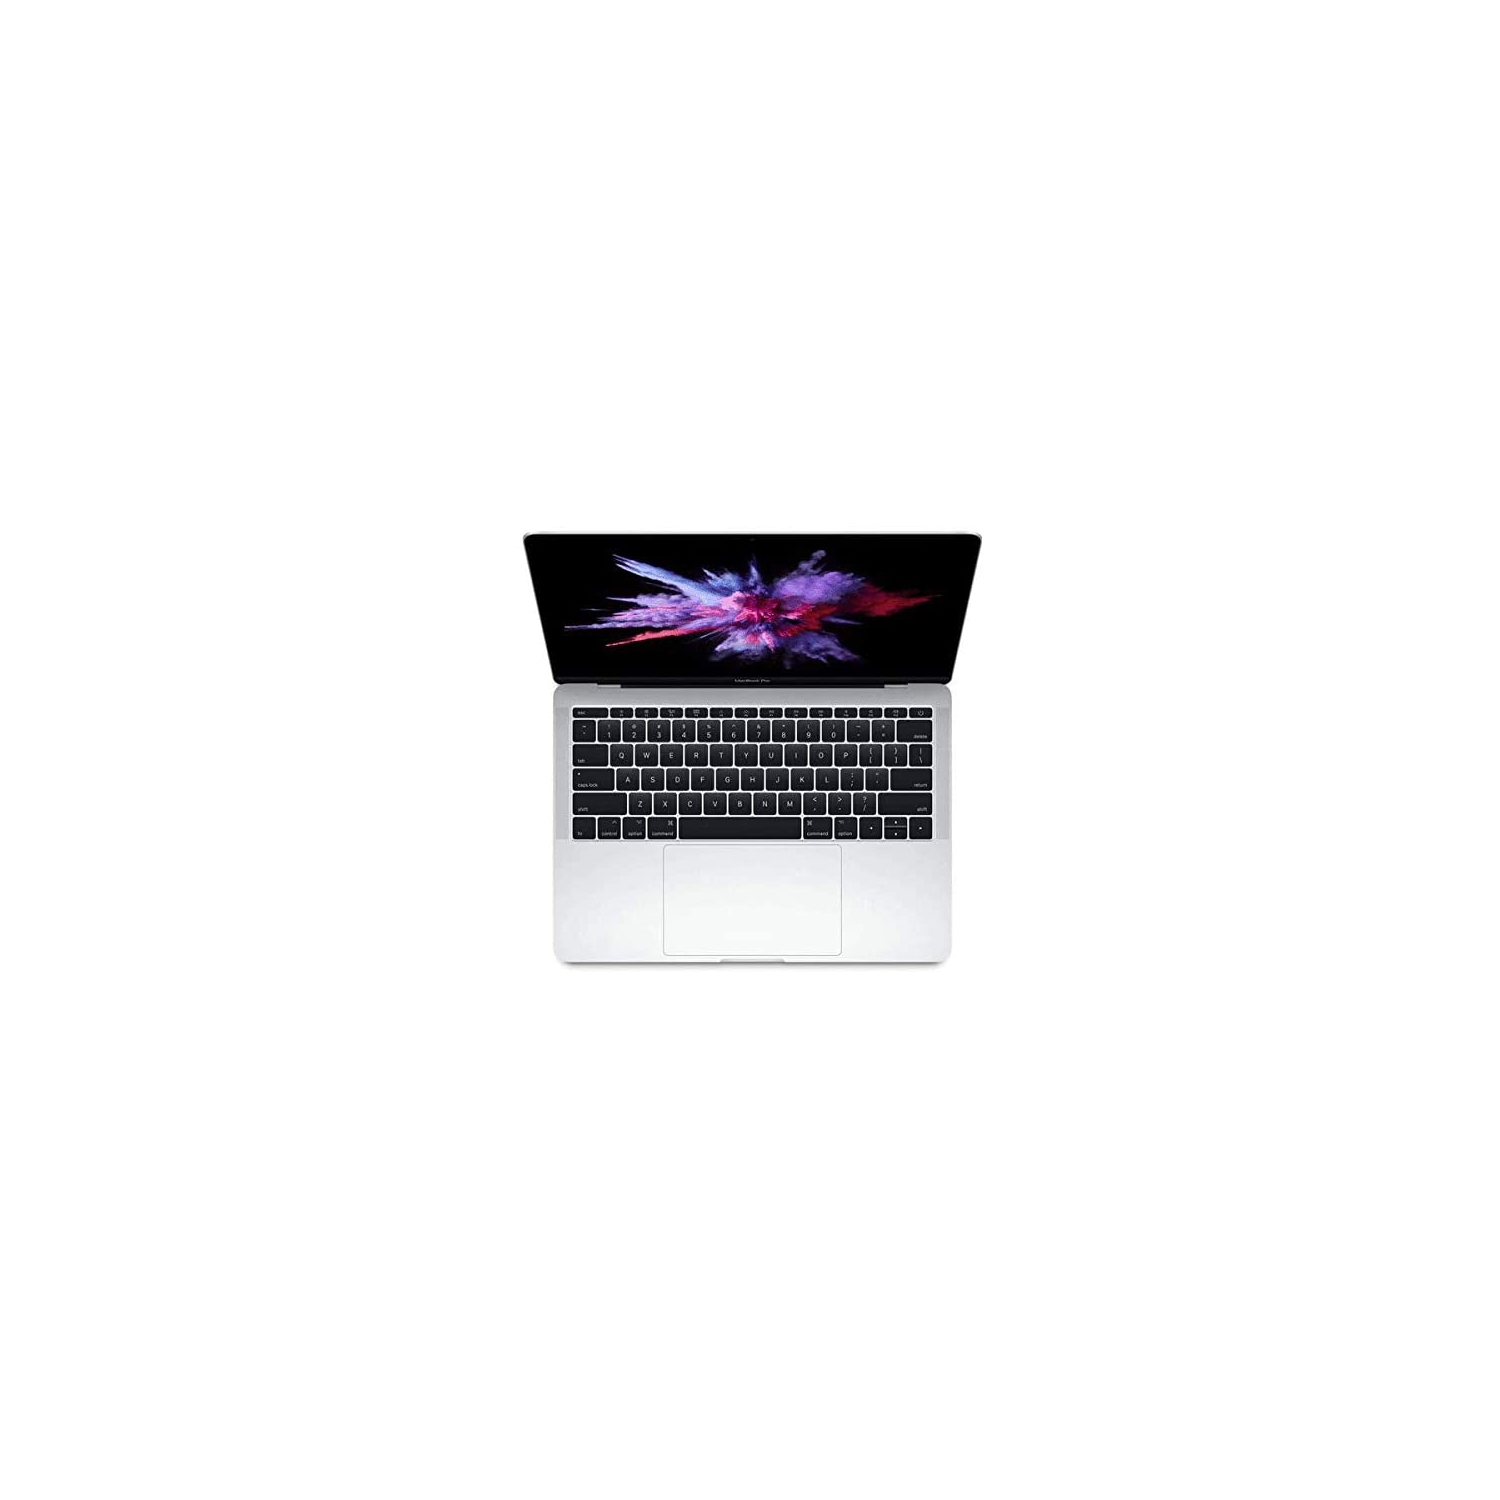 Apple MacBook Pro MPXU2LL/A, 13.3-inch Retina Display, 2.3GHz Intel Core i5, 8GB RAM, 256GB SSD - Silver - English - NEW